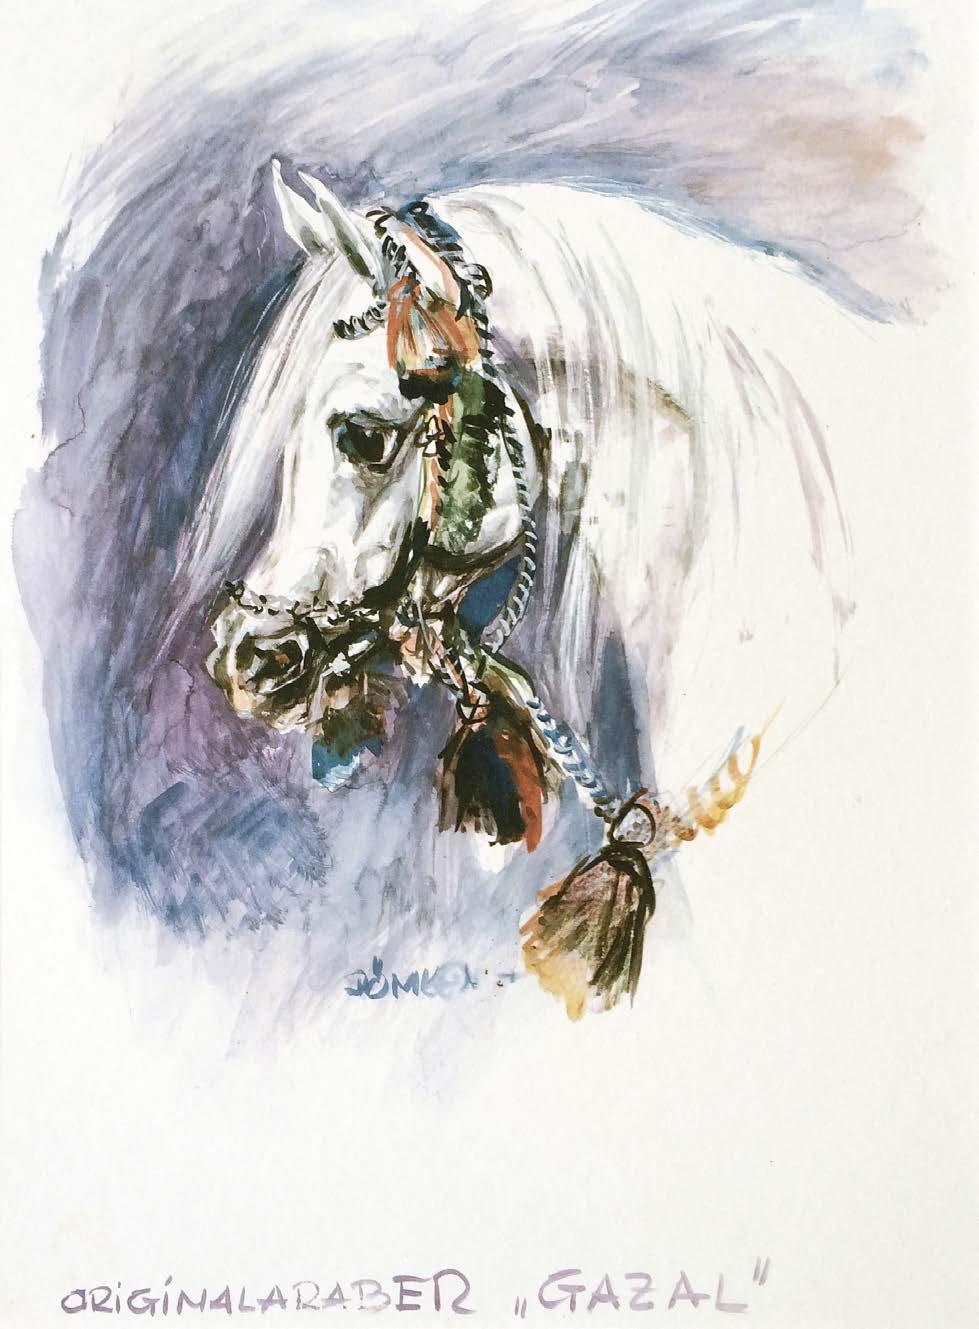 92 Desert Heritage Magazine Exquisite original watercolor painting of